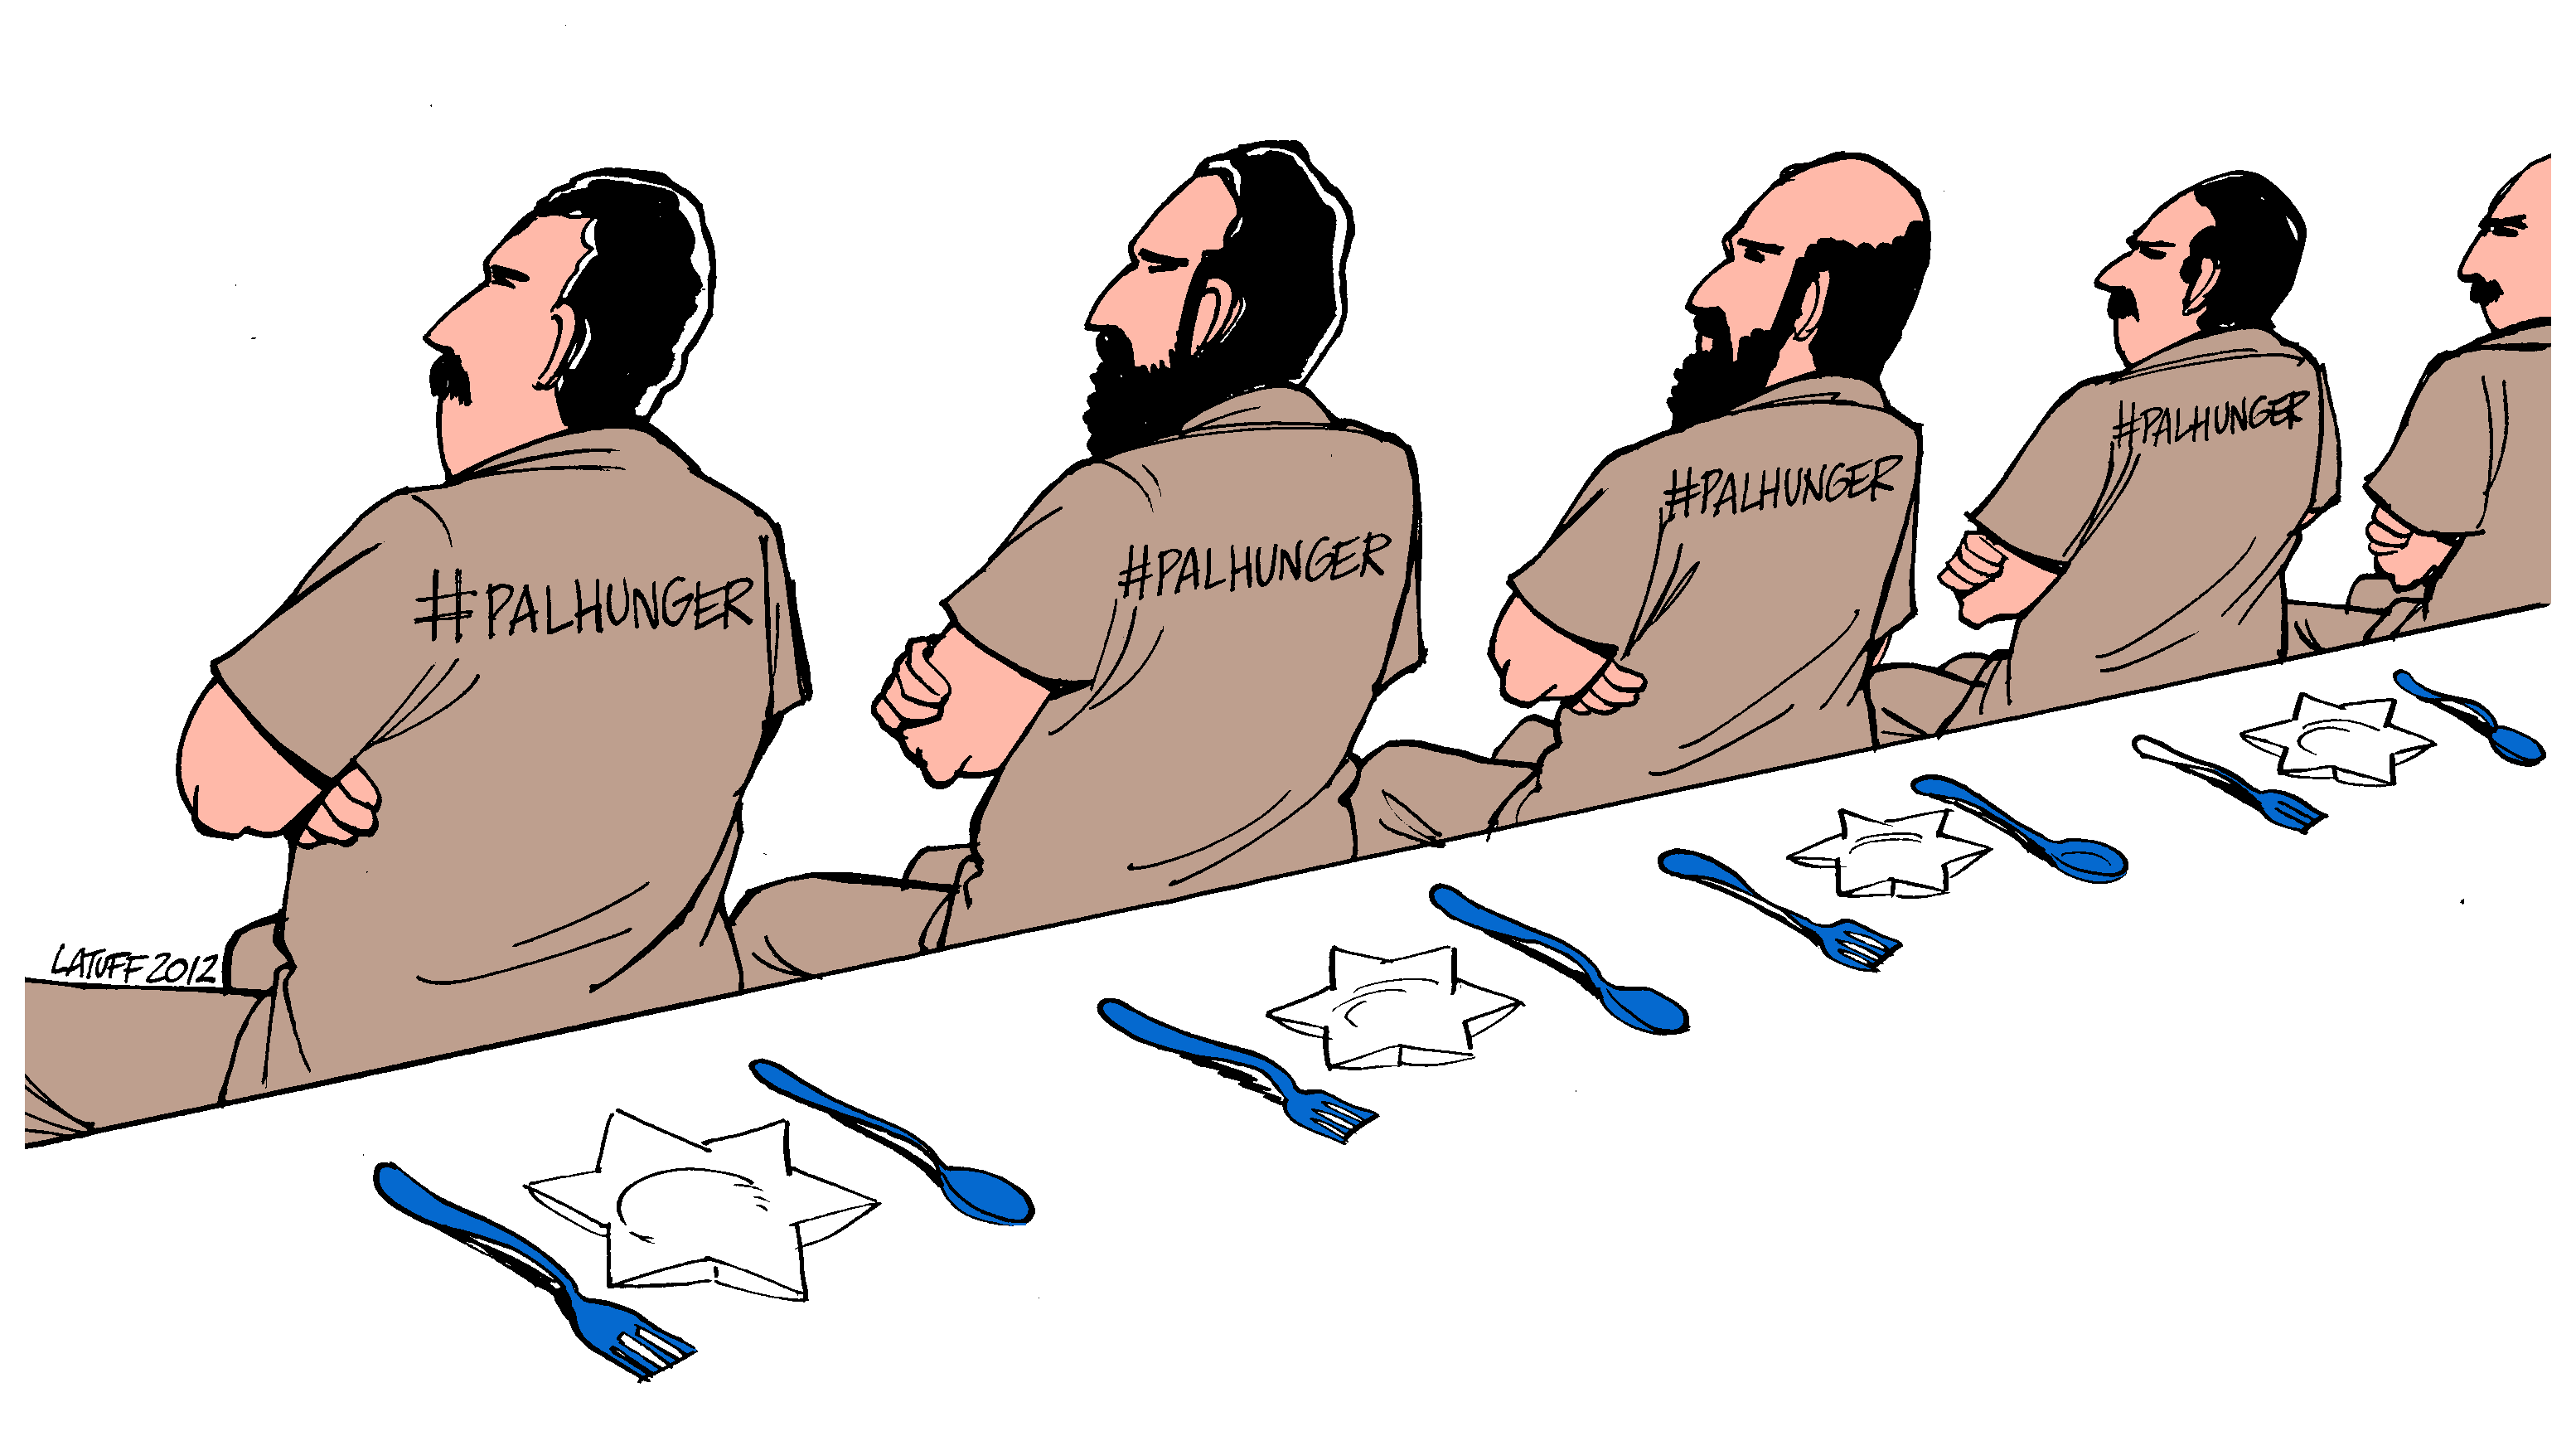 Palestinian hunger strike (image by Latuff)